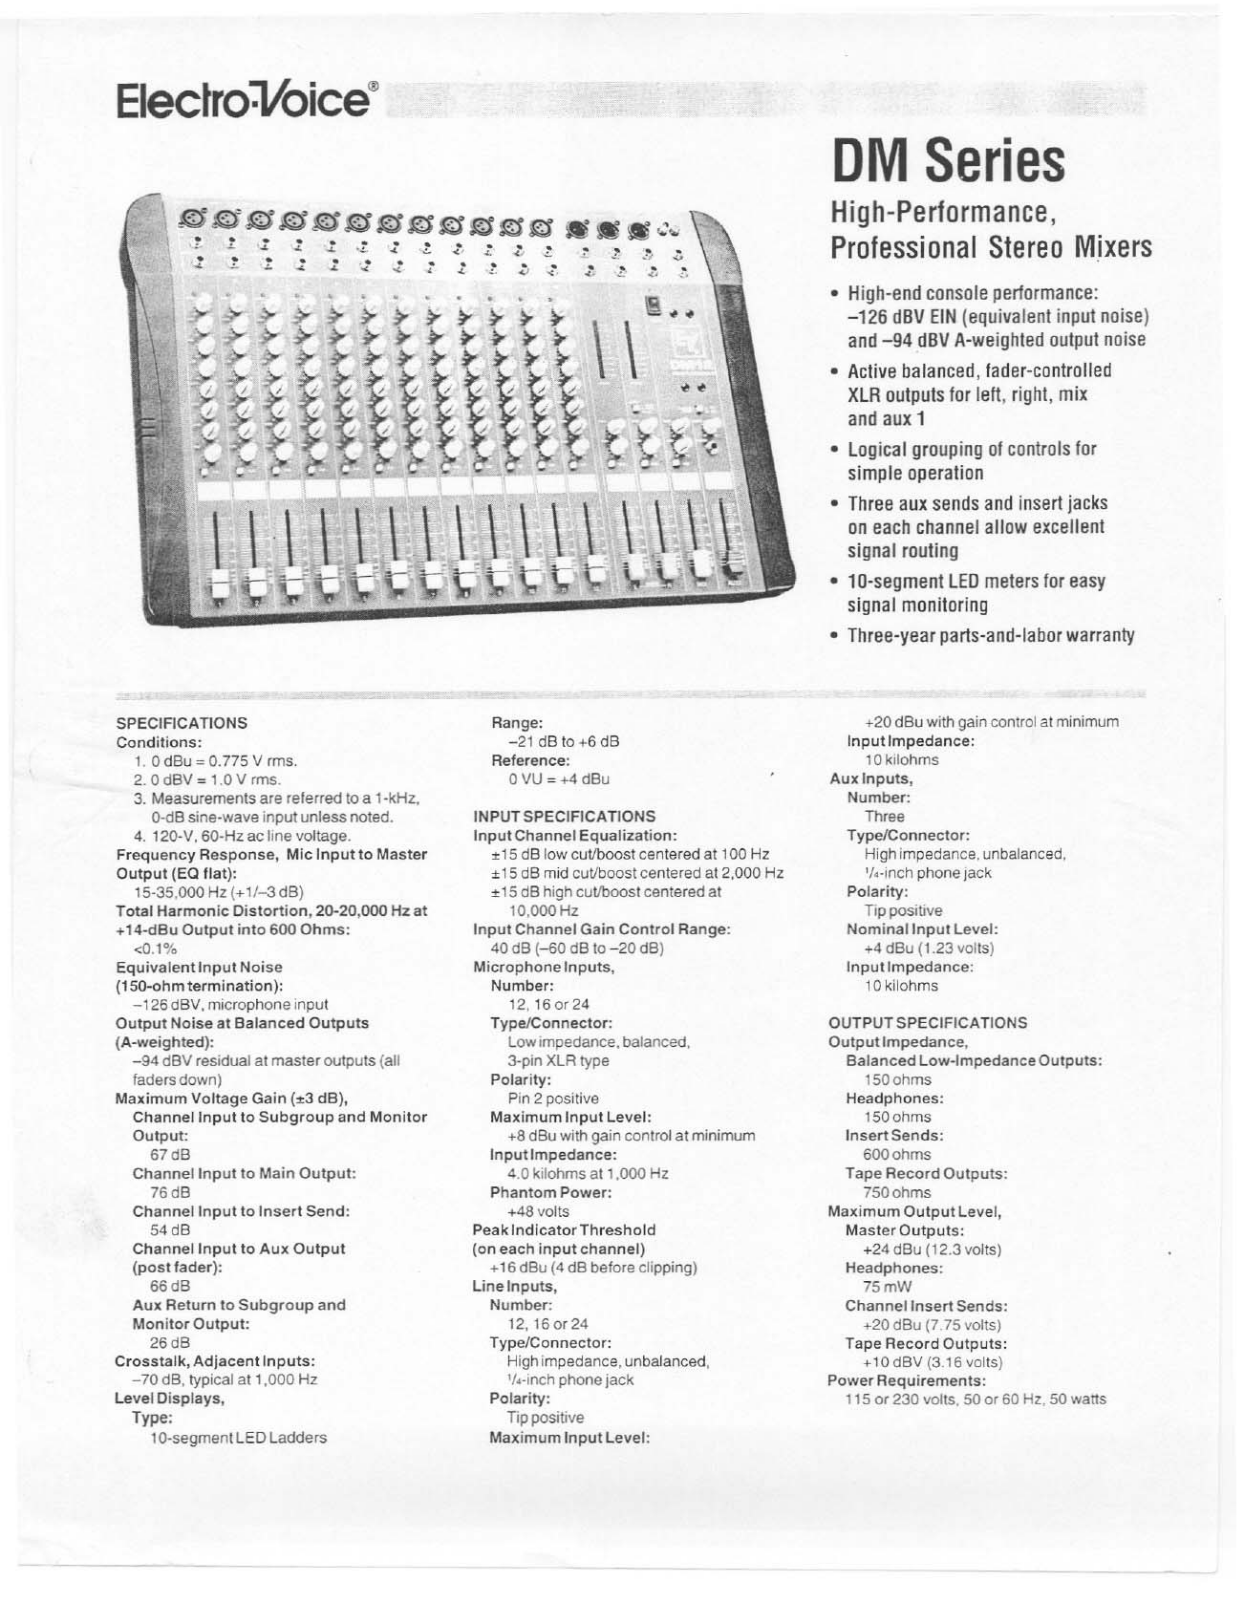 Electro-voice DM12, DM16, DM24 Manual